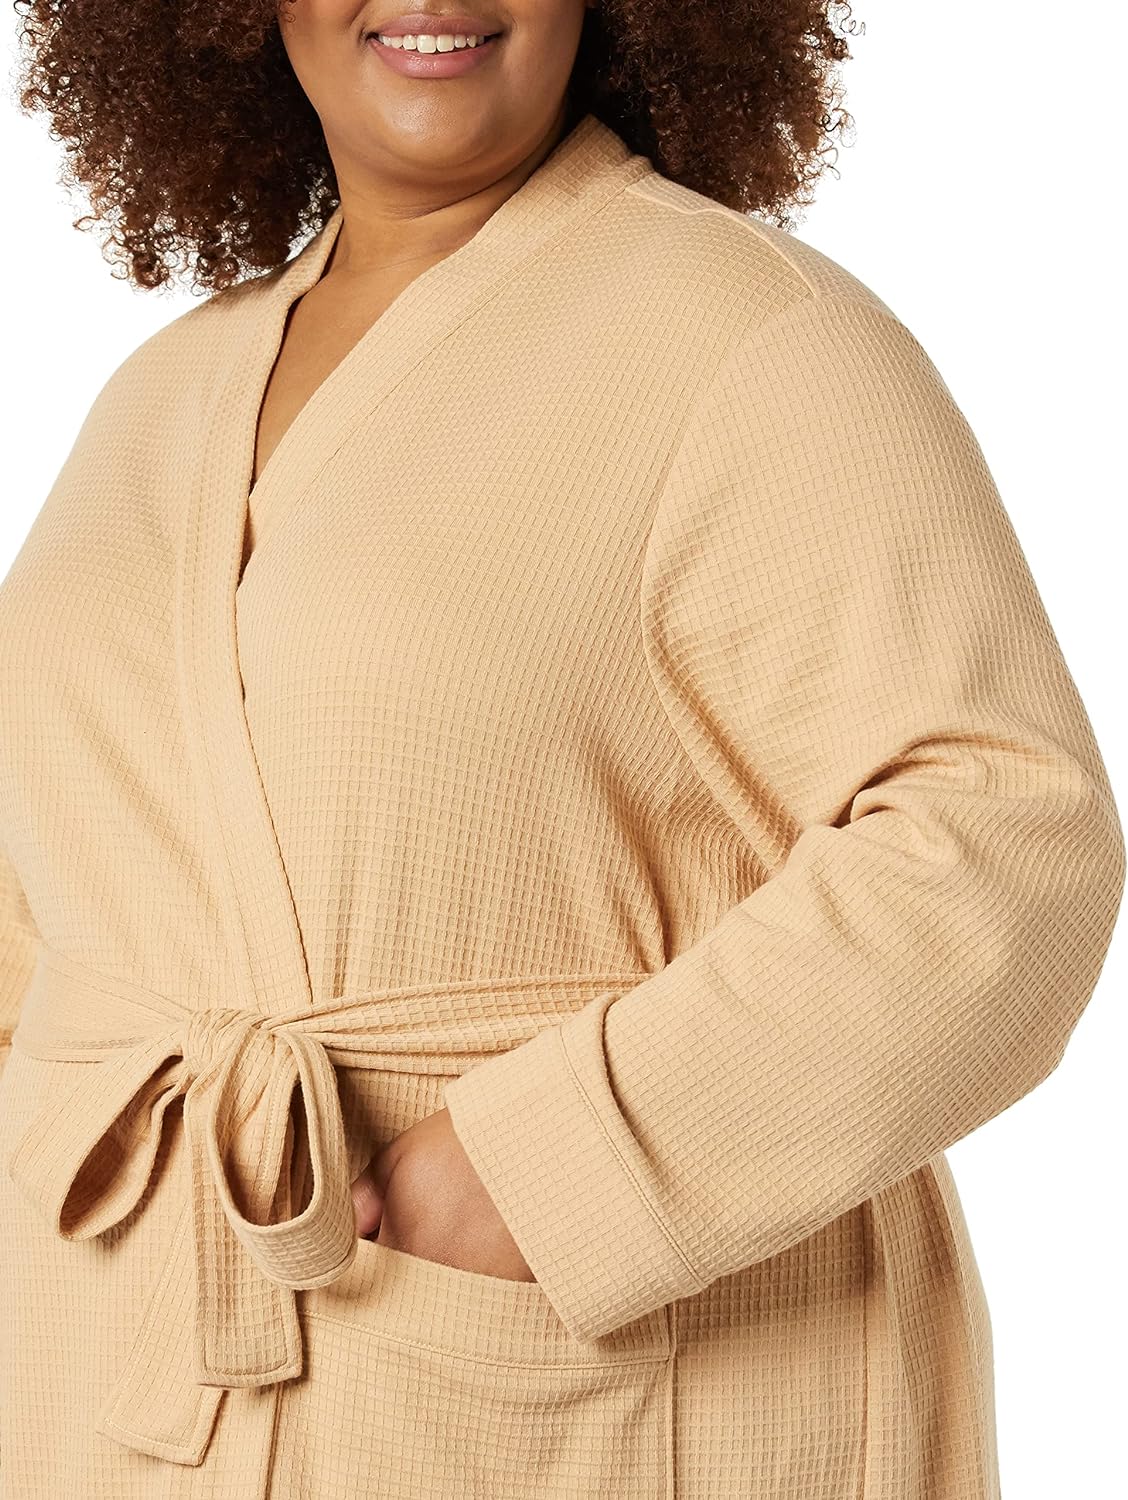 Amazon Essentials Women's Lightweight Waffle Full-Length Robe Light Camel XXL